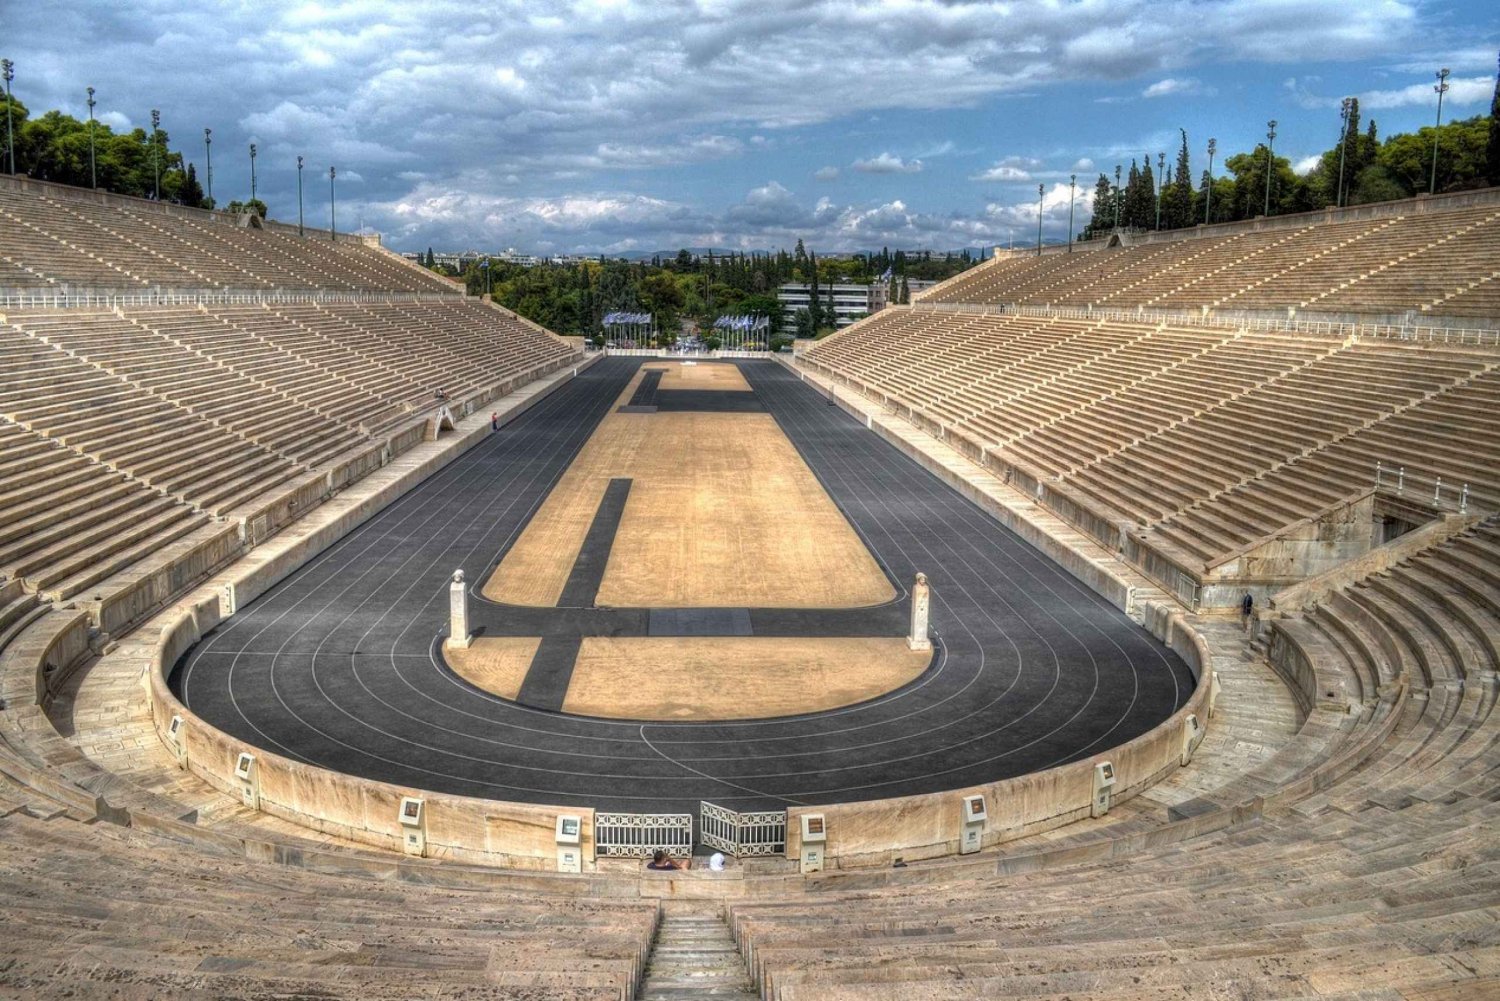 Athen: Privat tur til Akropolis, Plaka og Lycabettus